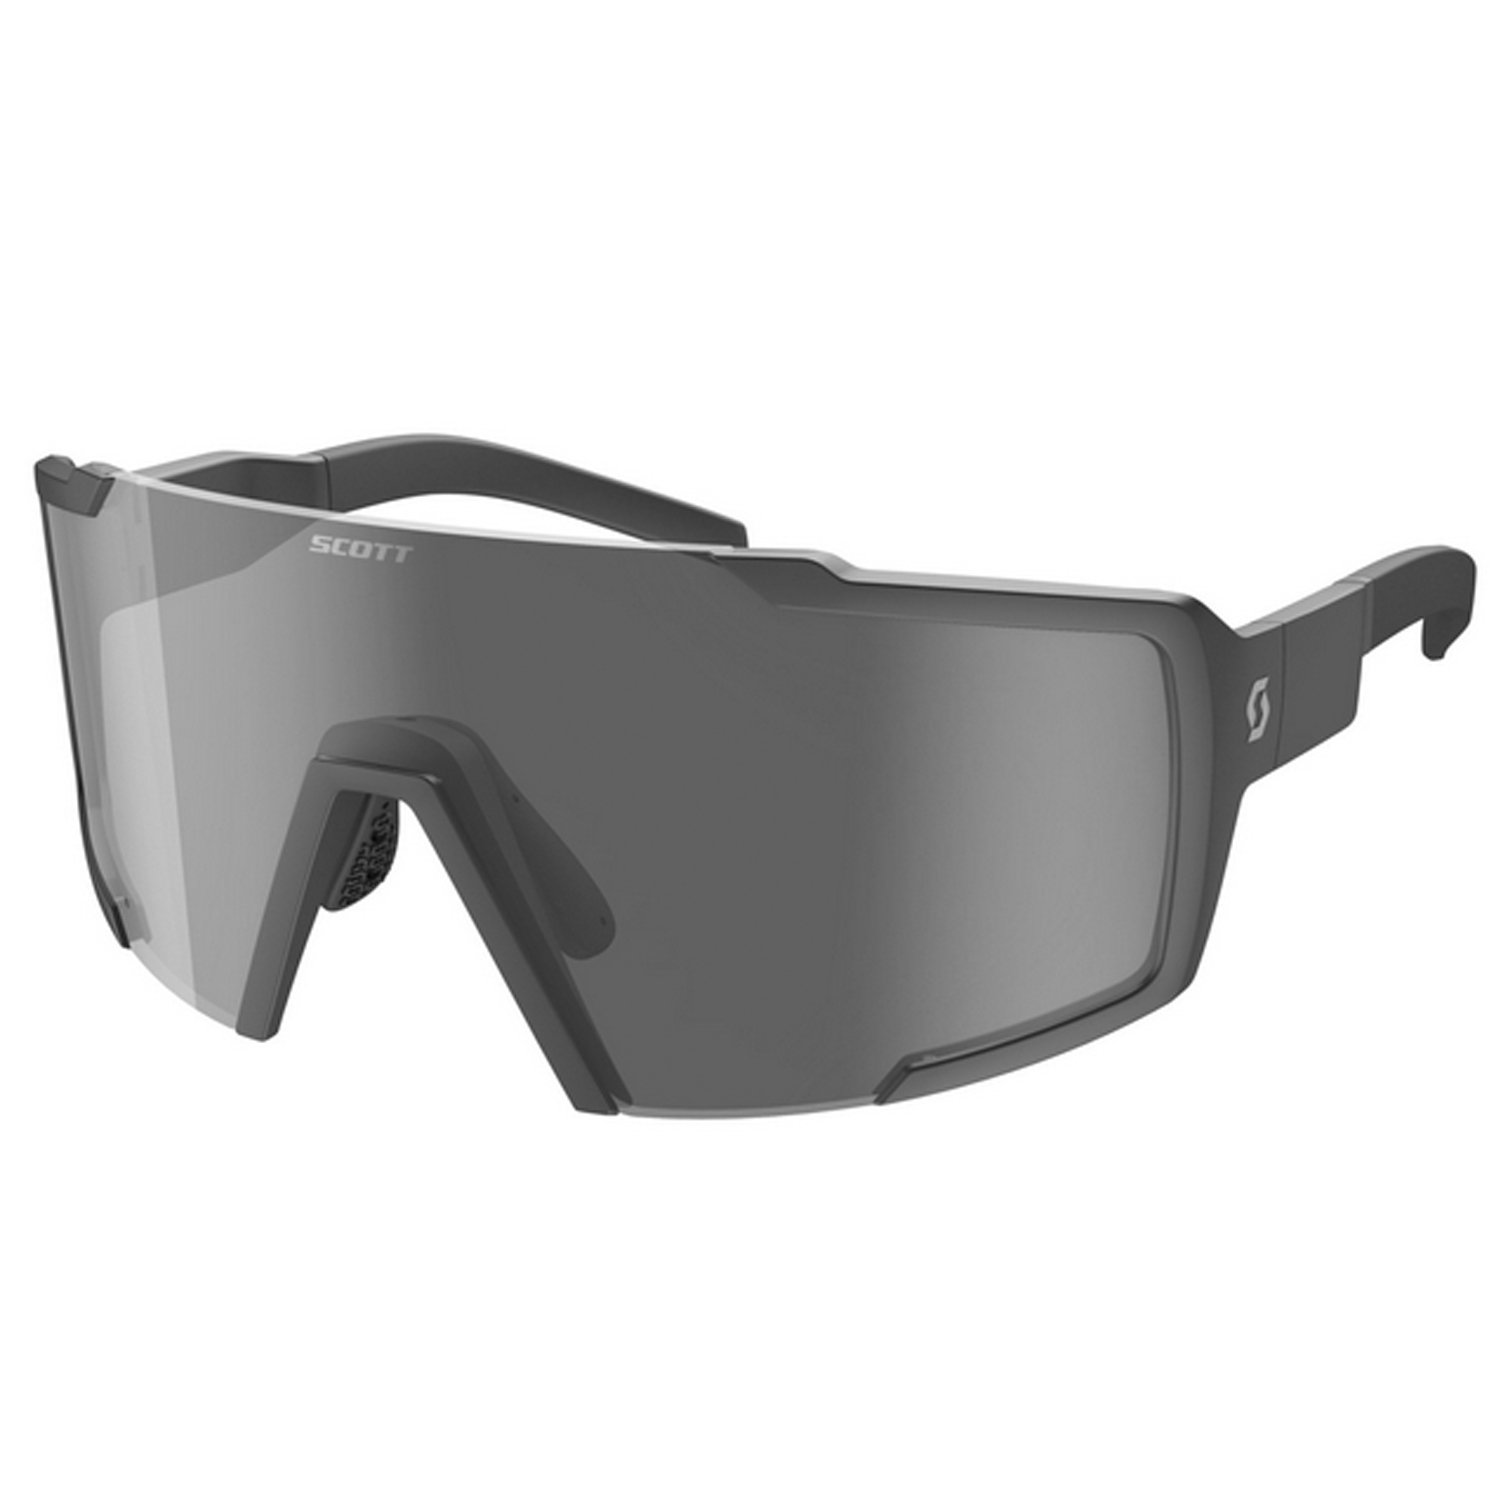 Очки велосипедные SCOTT Shield, black matt grey, ES275380-0135119 солнцезащитные очки bliz active fusion matt black 52105 10